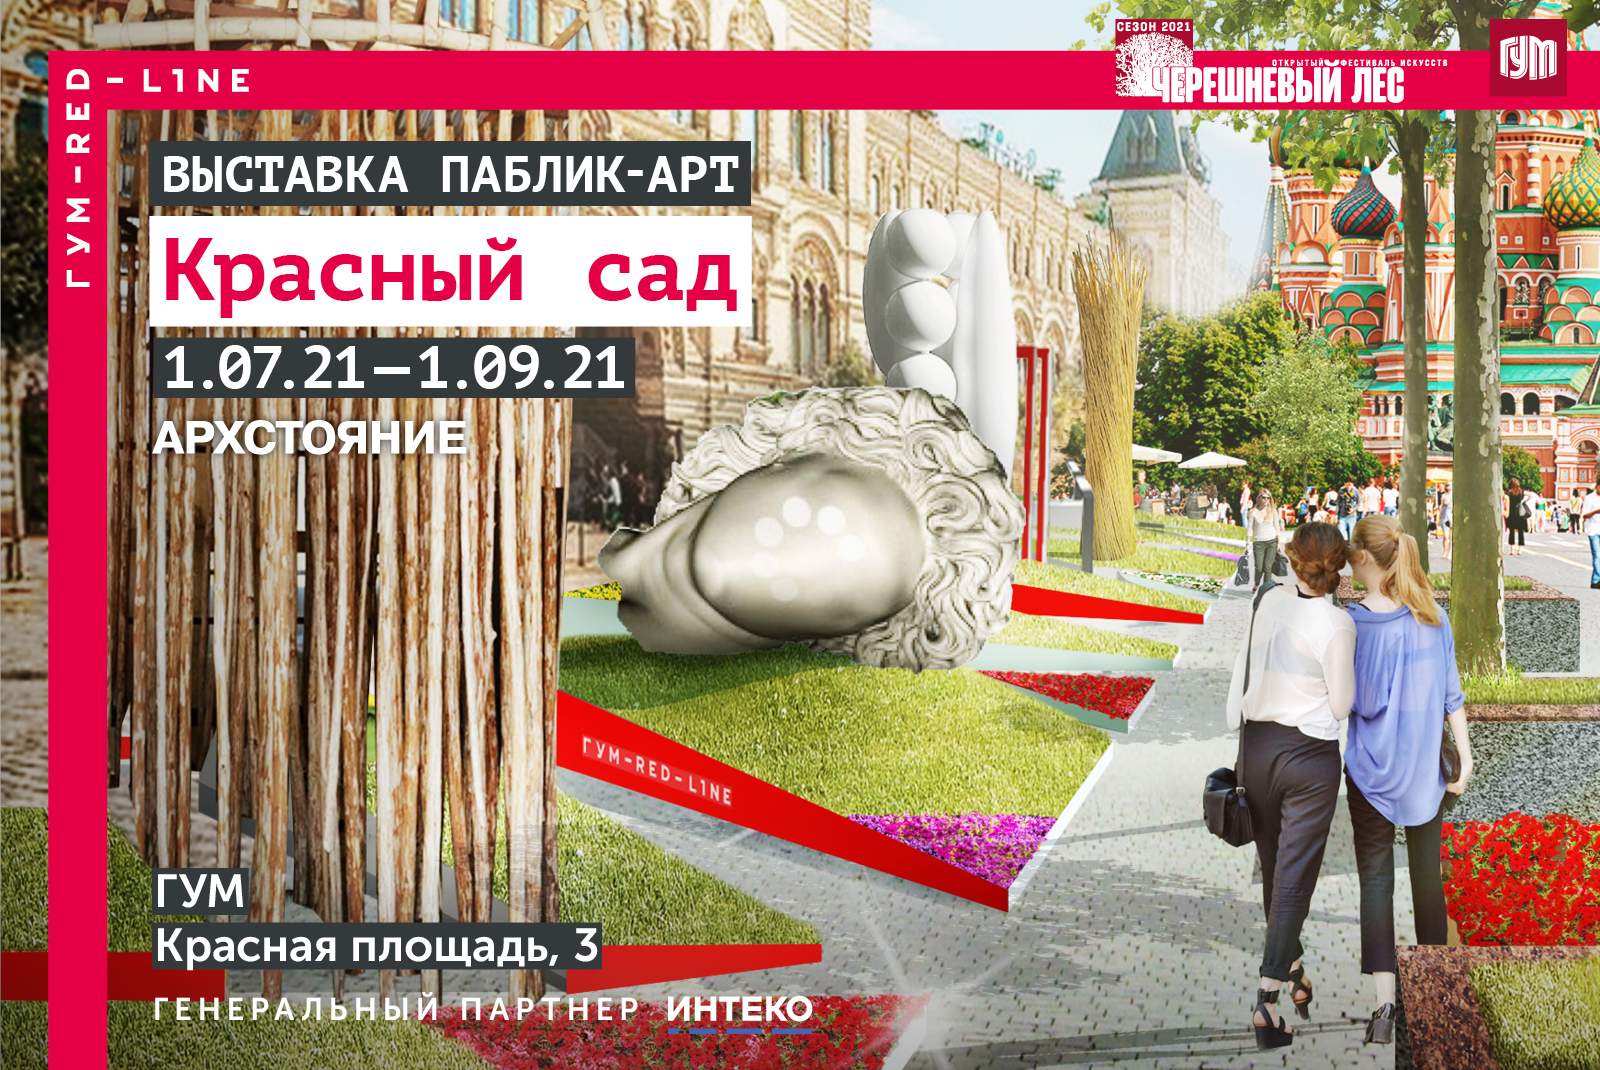 Выставка российского паблик-арта «Красный сад» на Красной площади